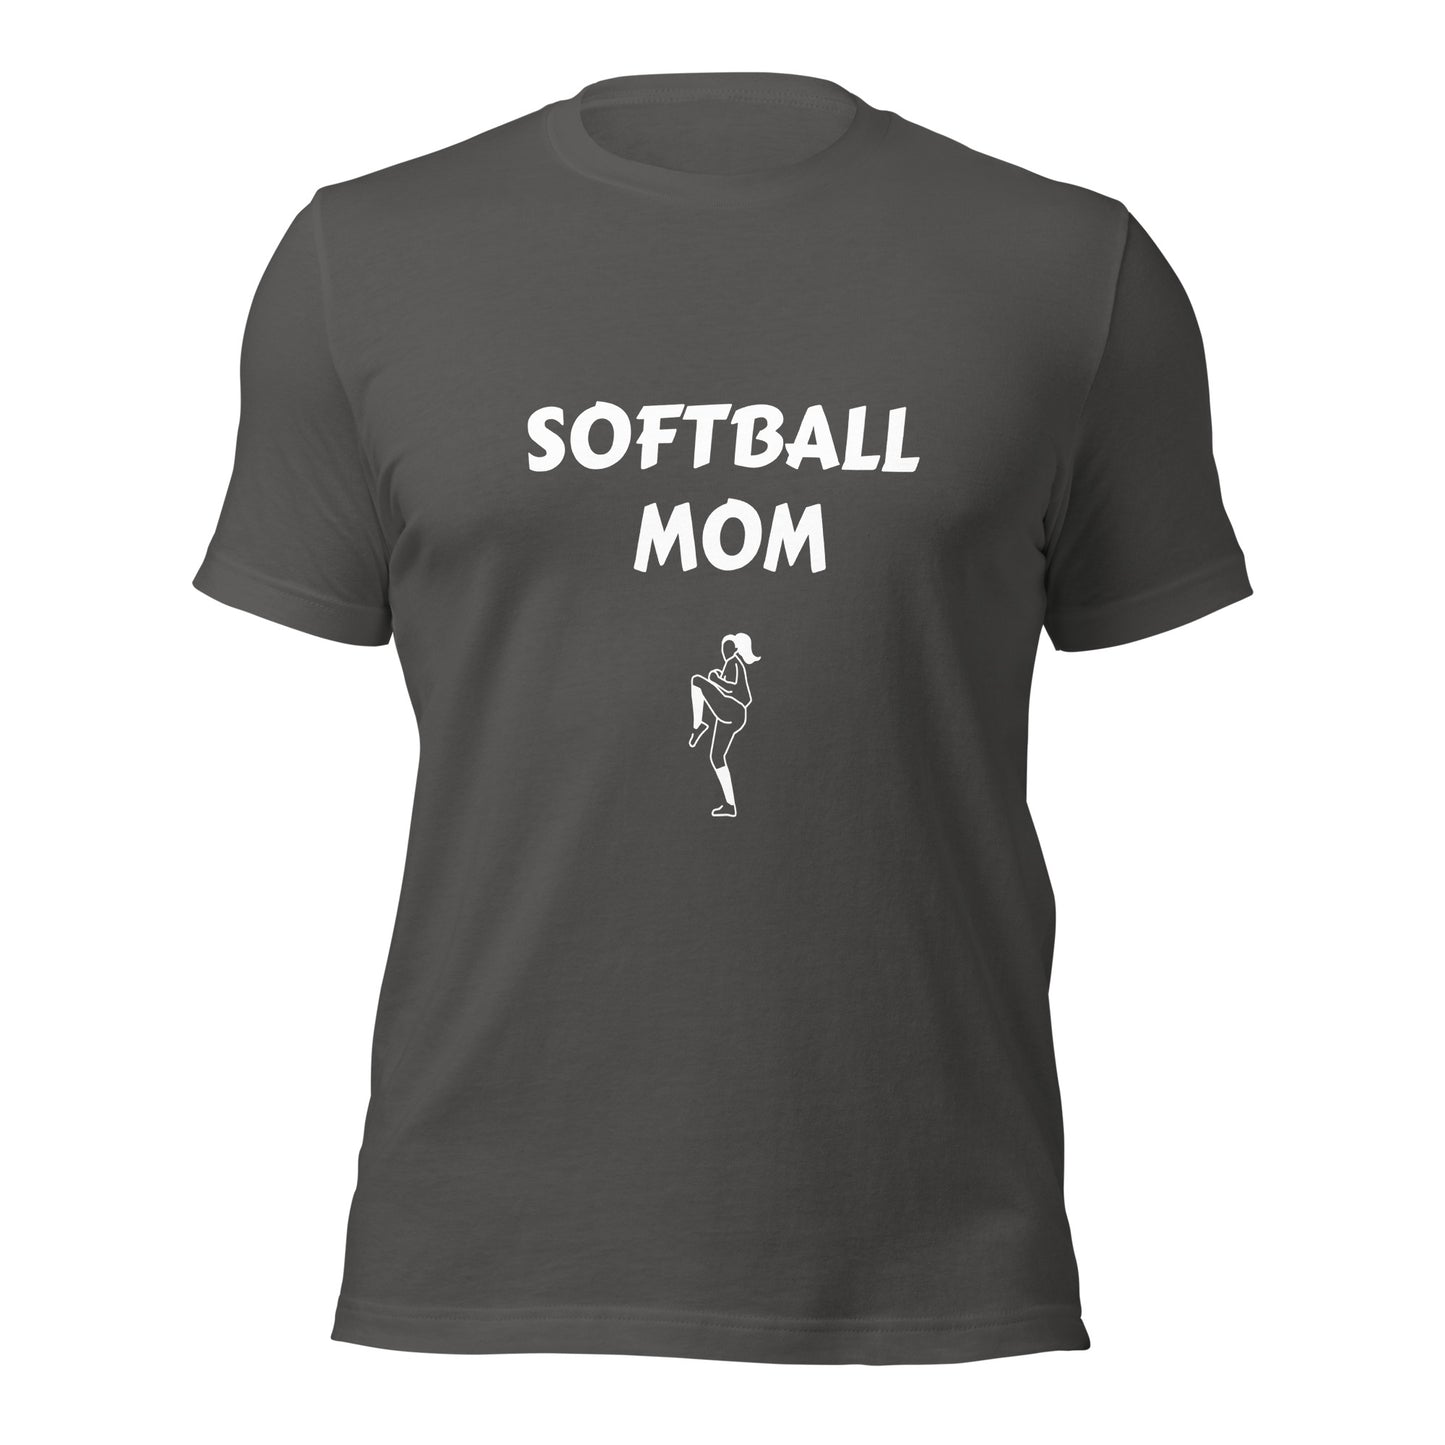 Softball Mom Printed Tshirt